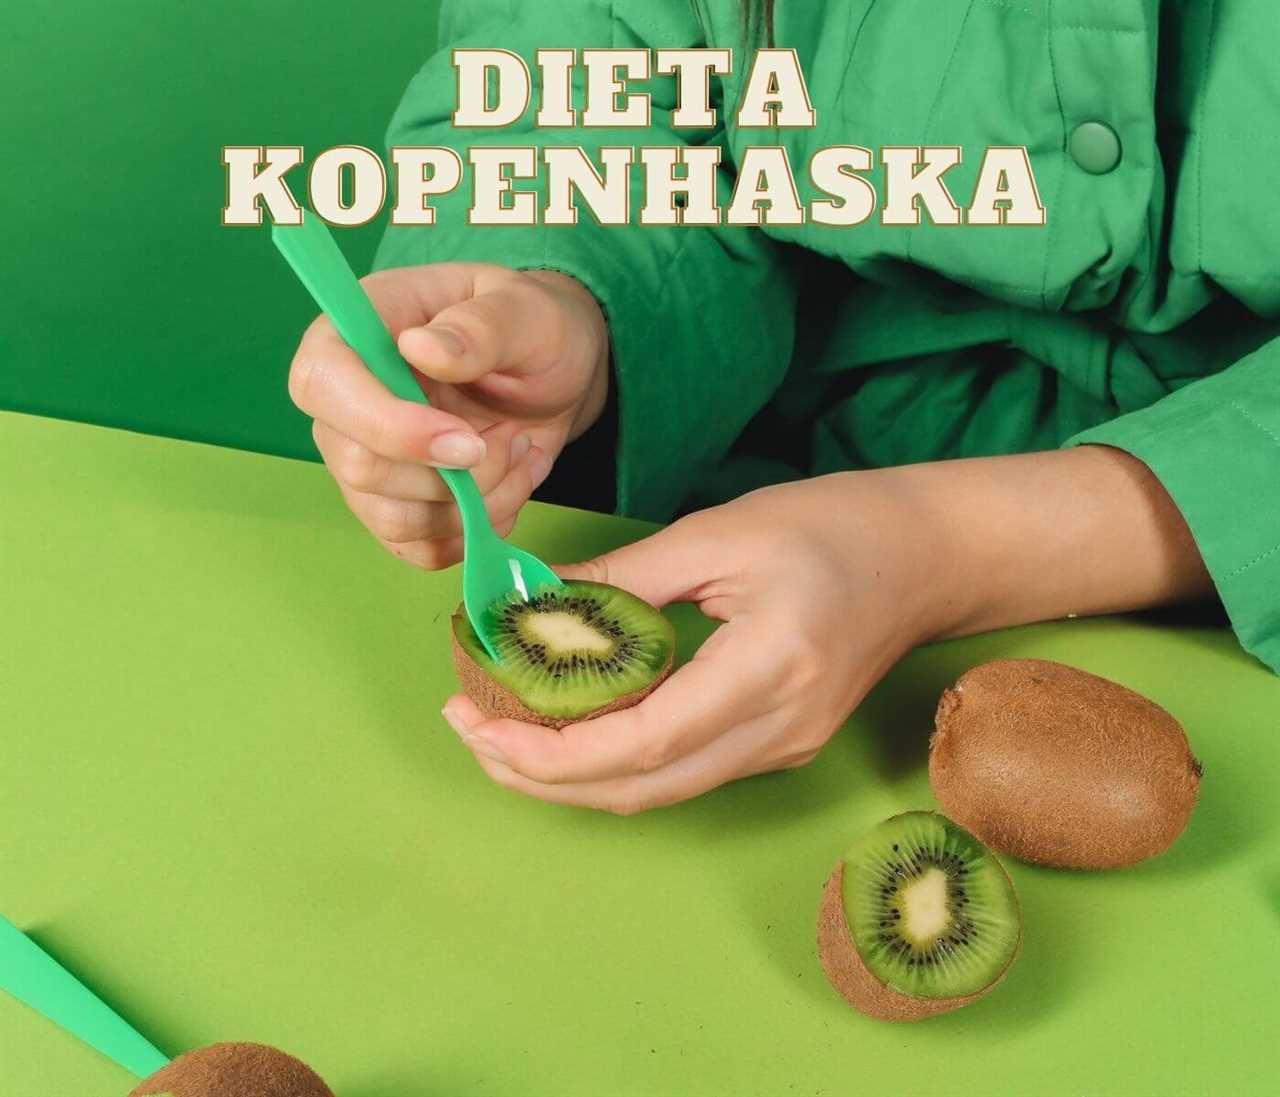 Dieta kopenhaska przepisy - skuteczne menu na odchudzanie | Porady dietetyczne